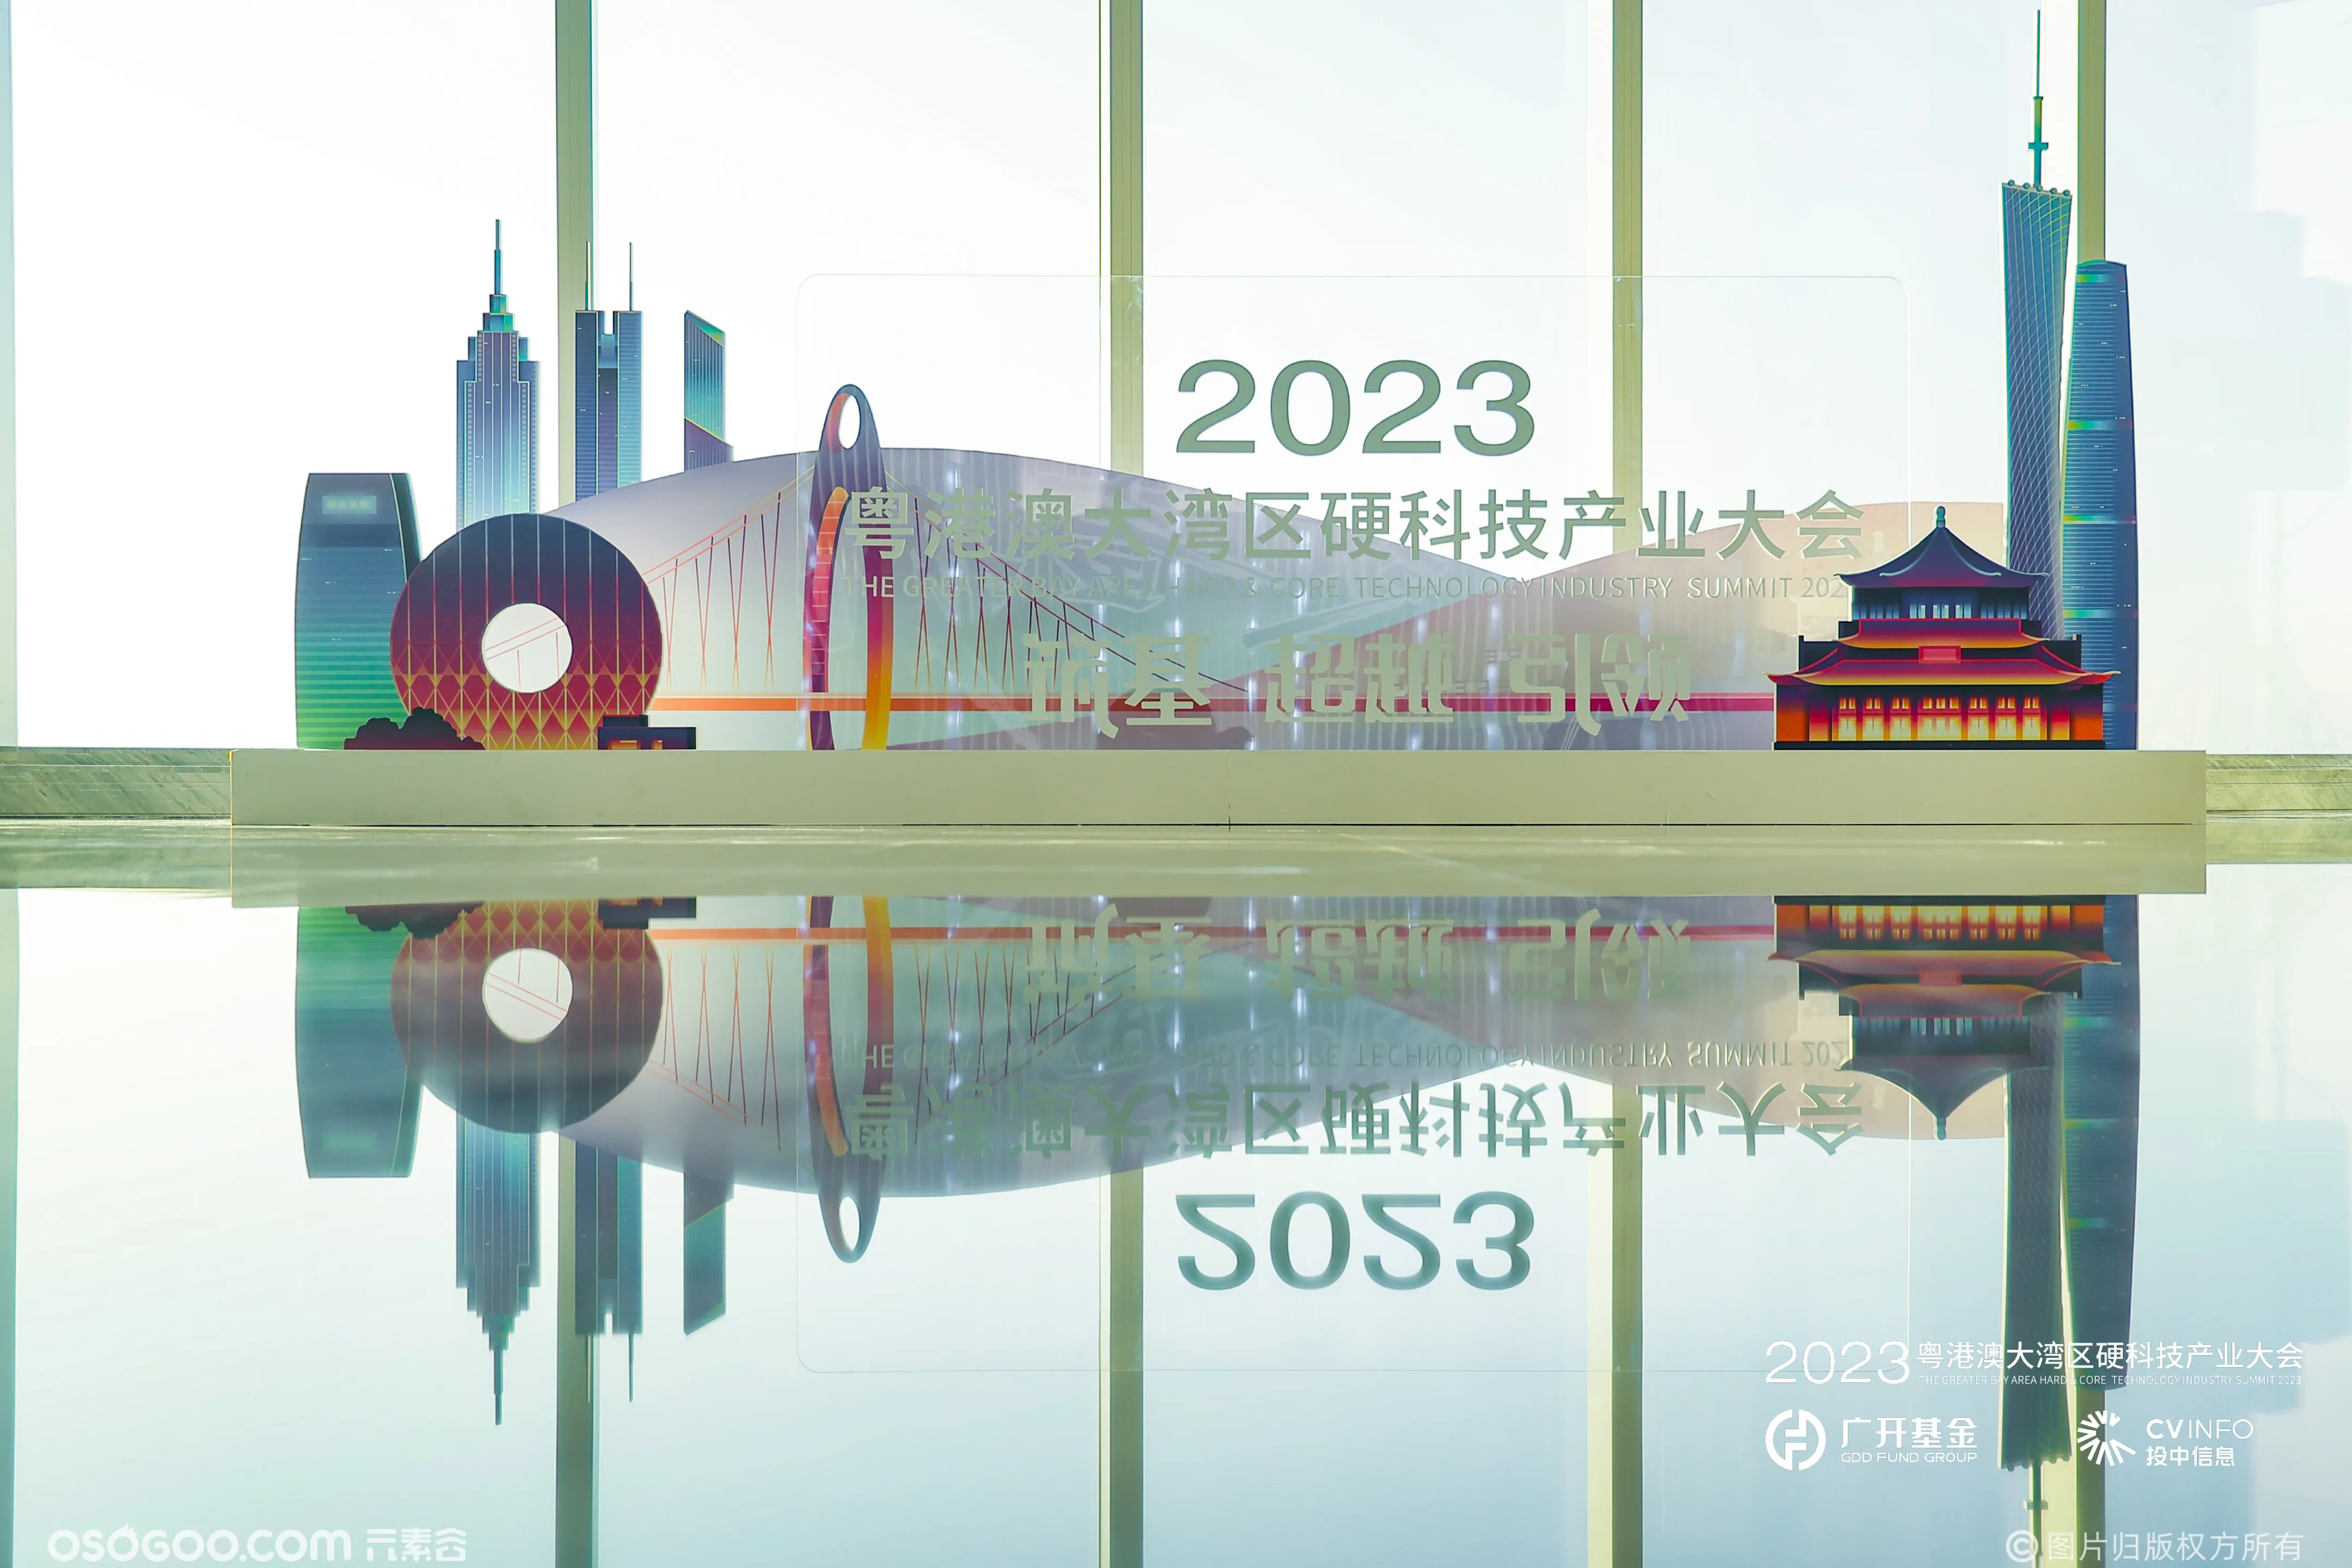 2023粤港澳大湾区硬科技产业大会